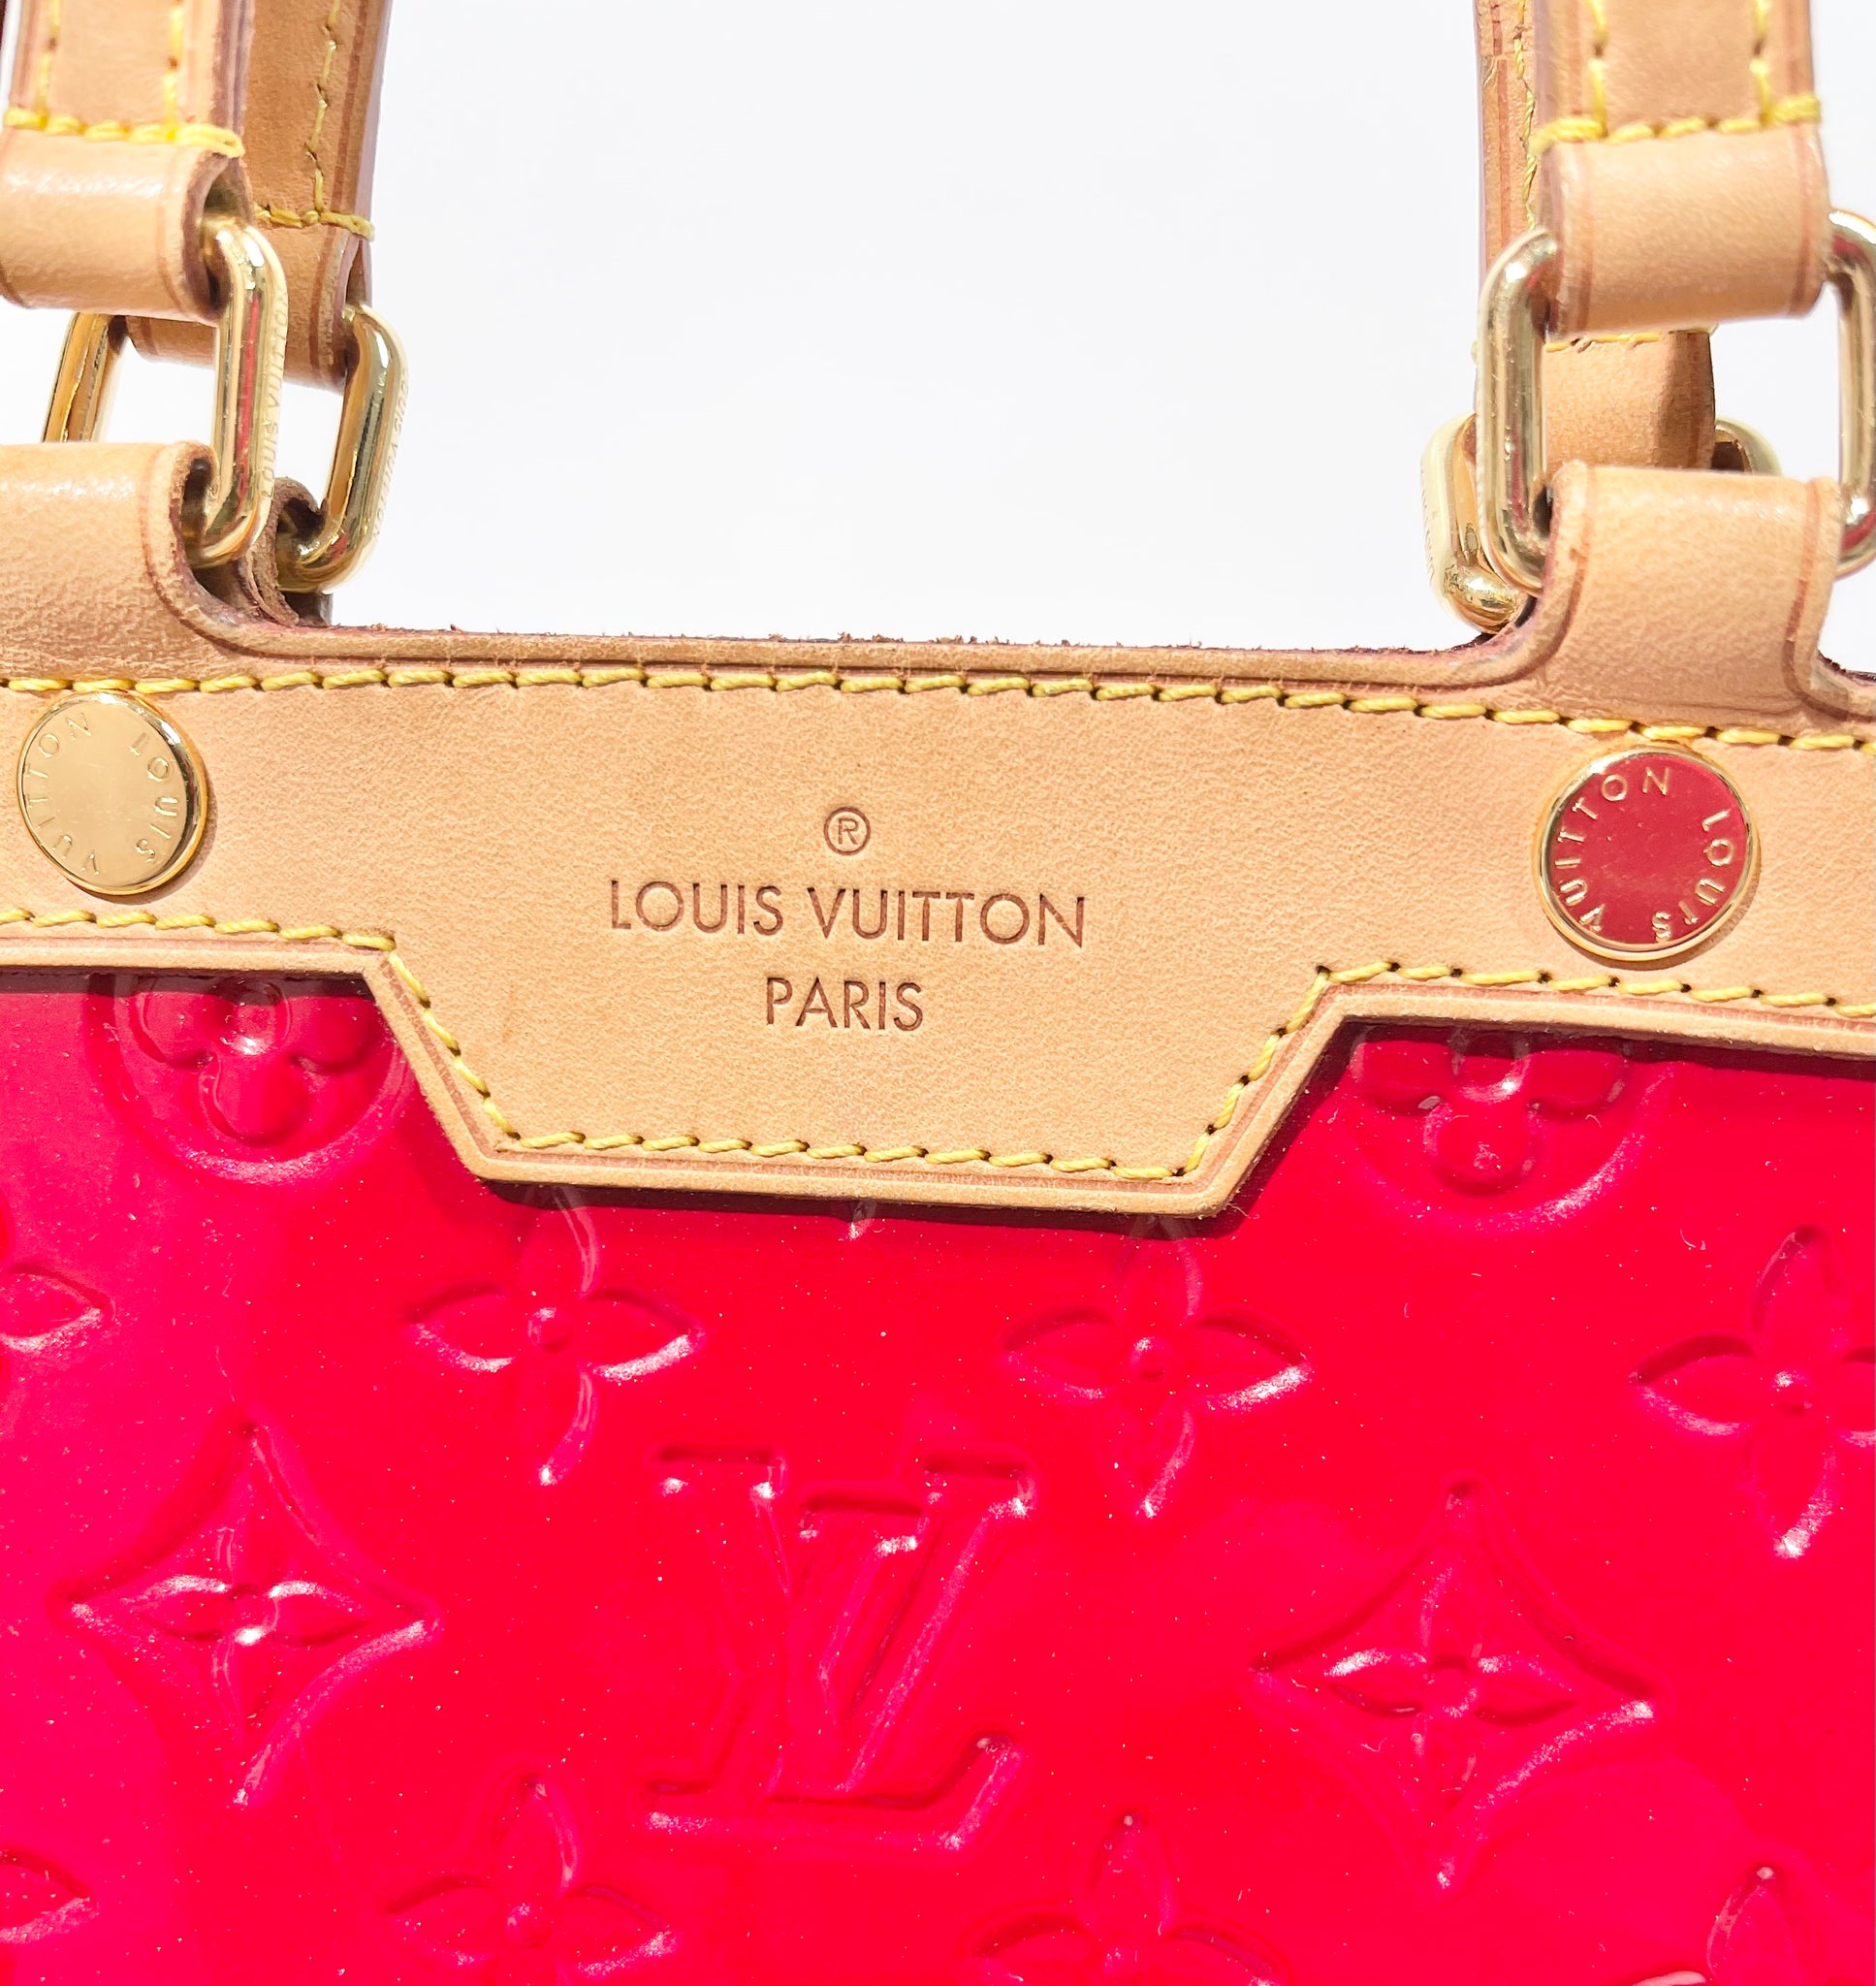 Gold Louis Vuitton Monogram Vernis Brea PM Satchel